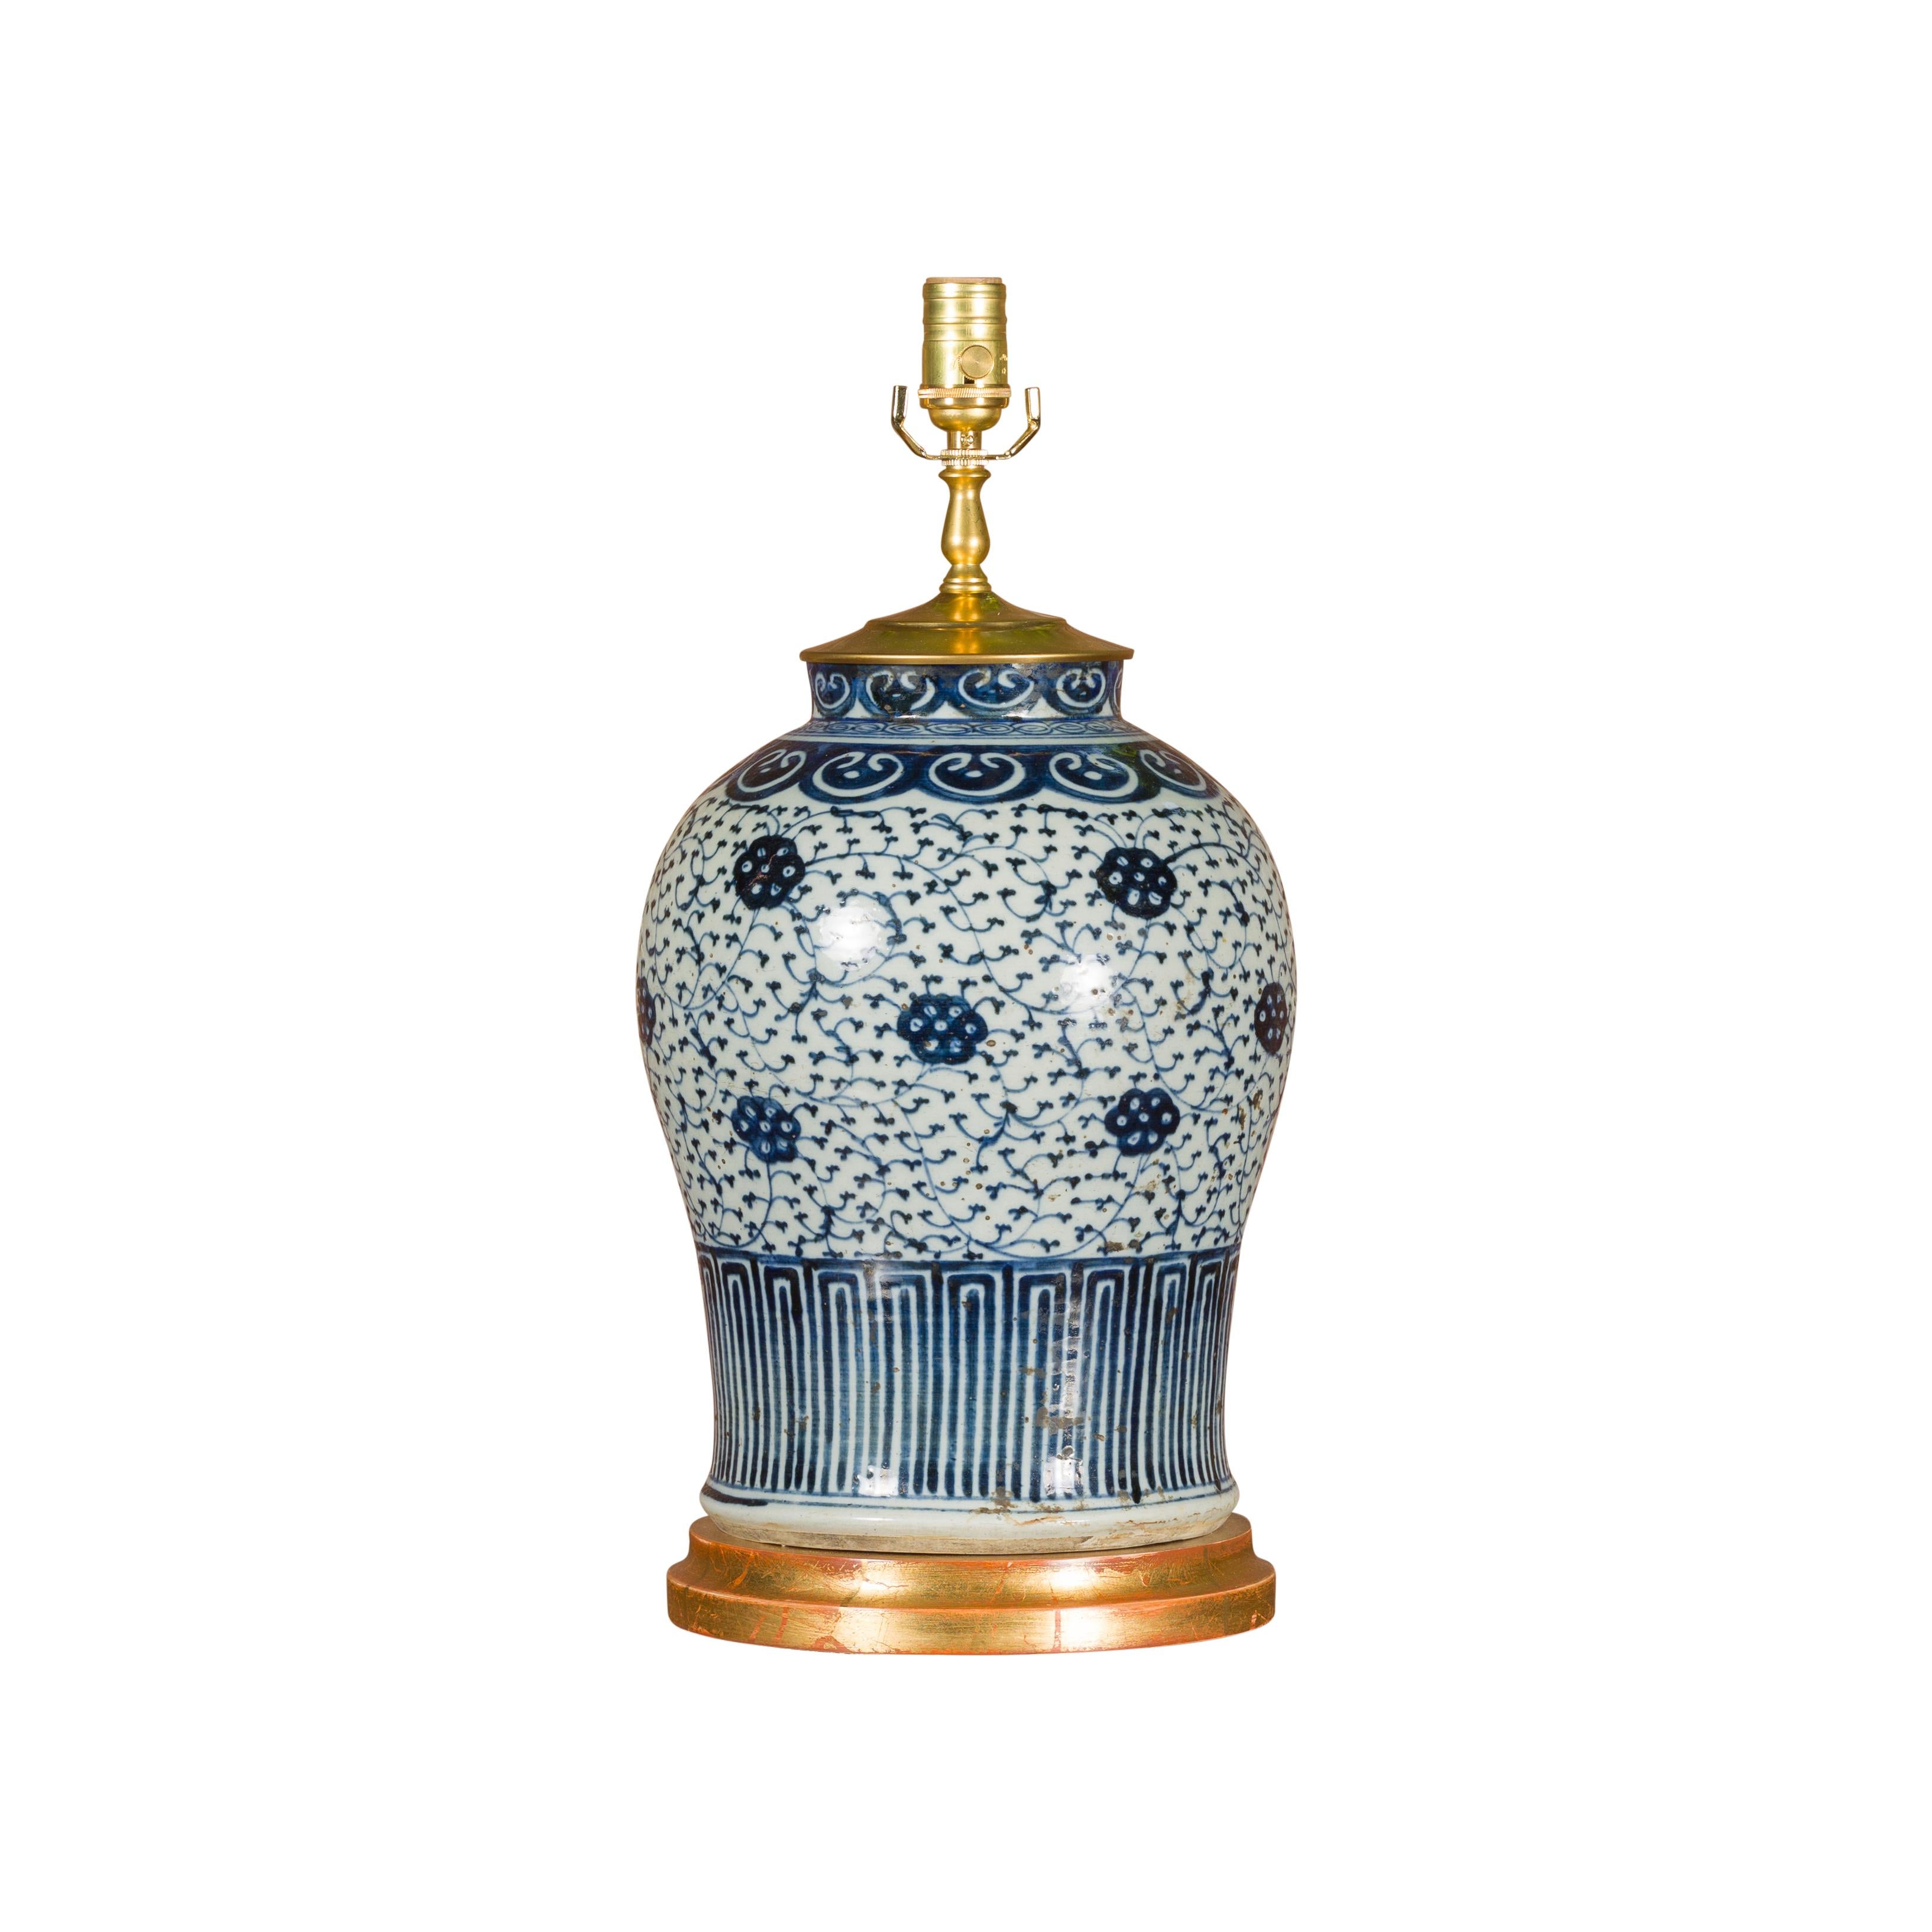 Vase de Delft du 18ème siècle transformé en lampe de table câblée américaine 3